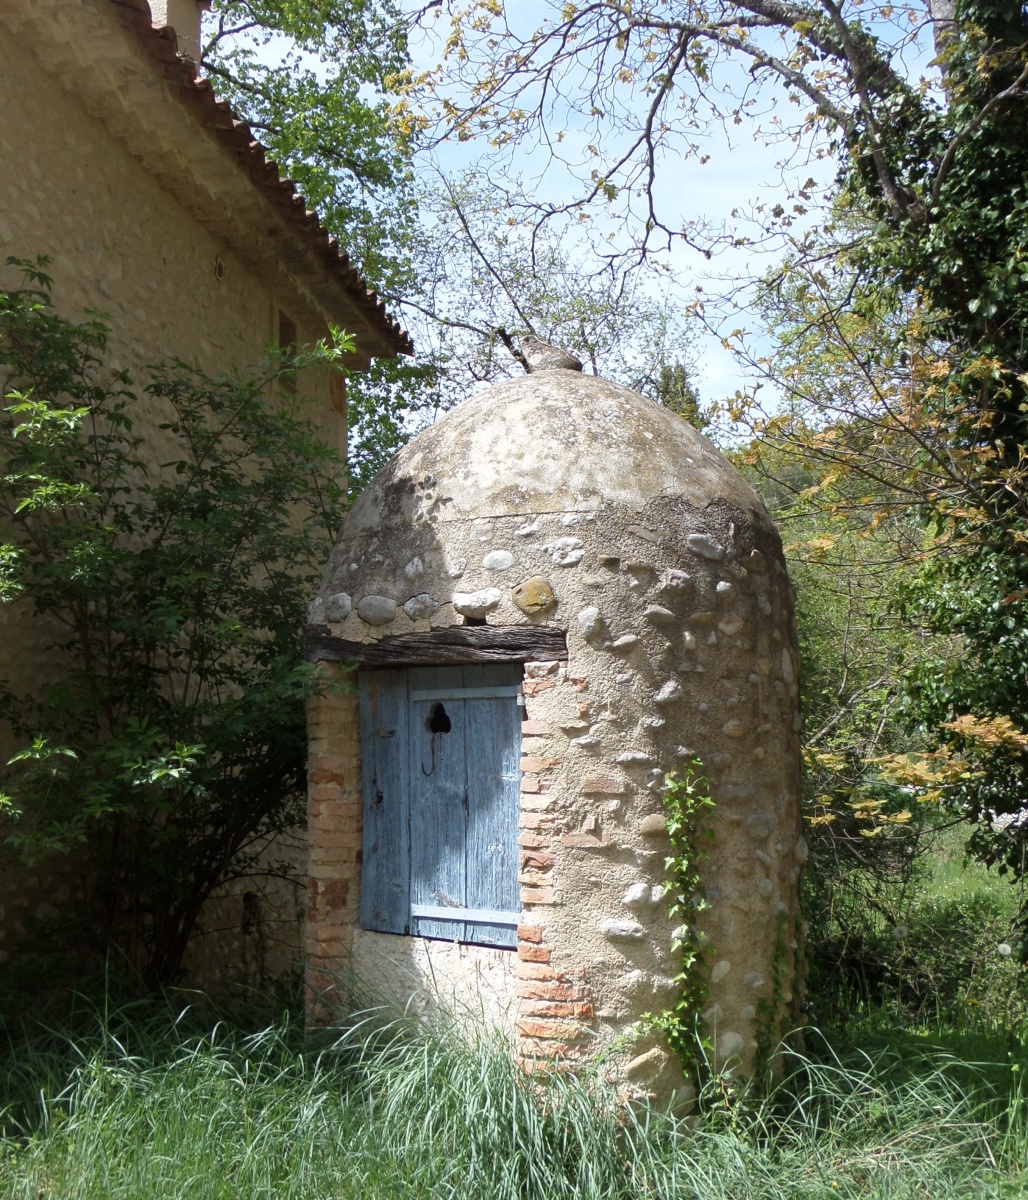 ouvrage hydraulique : puits sur la commune de Roumoules - photo de Marjorie Salavarelli - Parc naturel régional du Verdon 2014